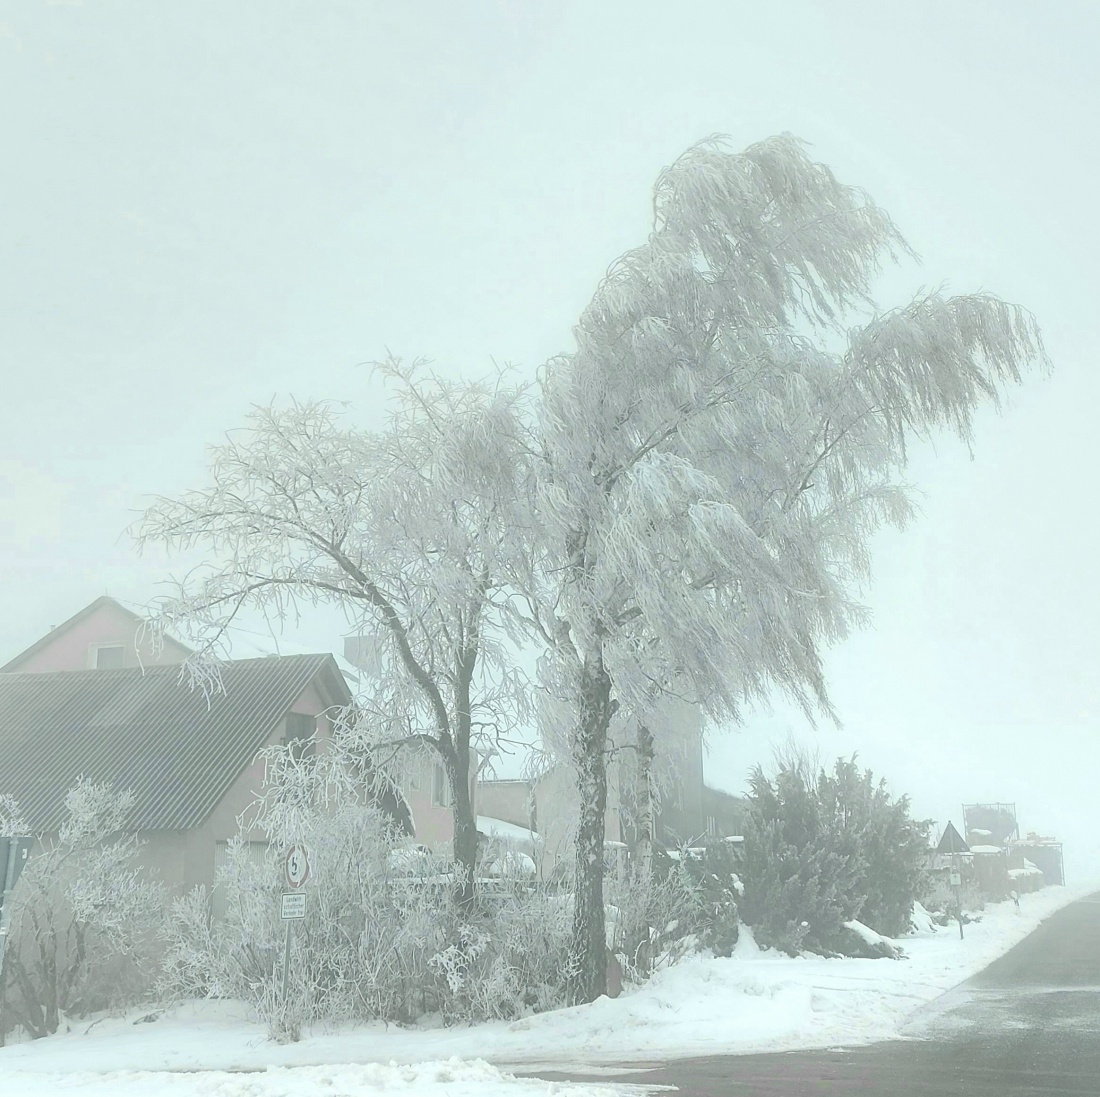 Foto: Martin Zehrer - 27. Januar 2022 oben, bei Godas...<br />
Nebel, angefrorene Bäume und minus 3 Grad kalt... 